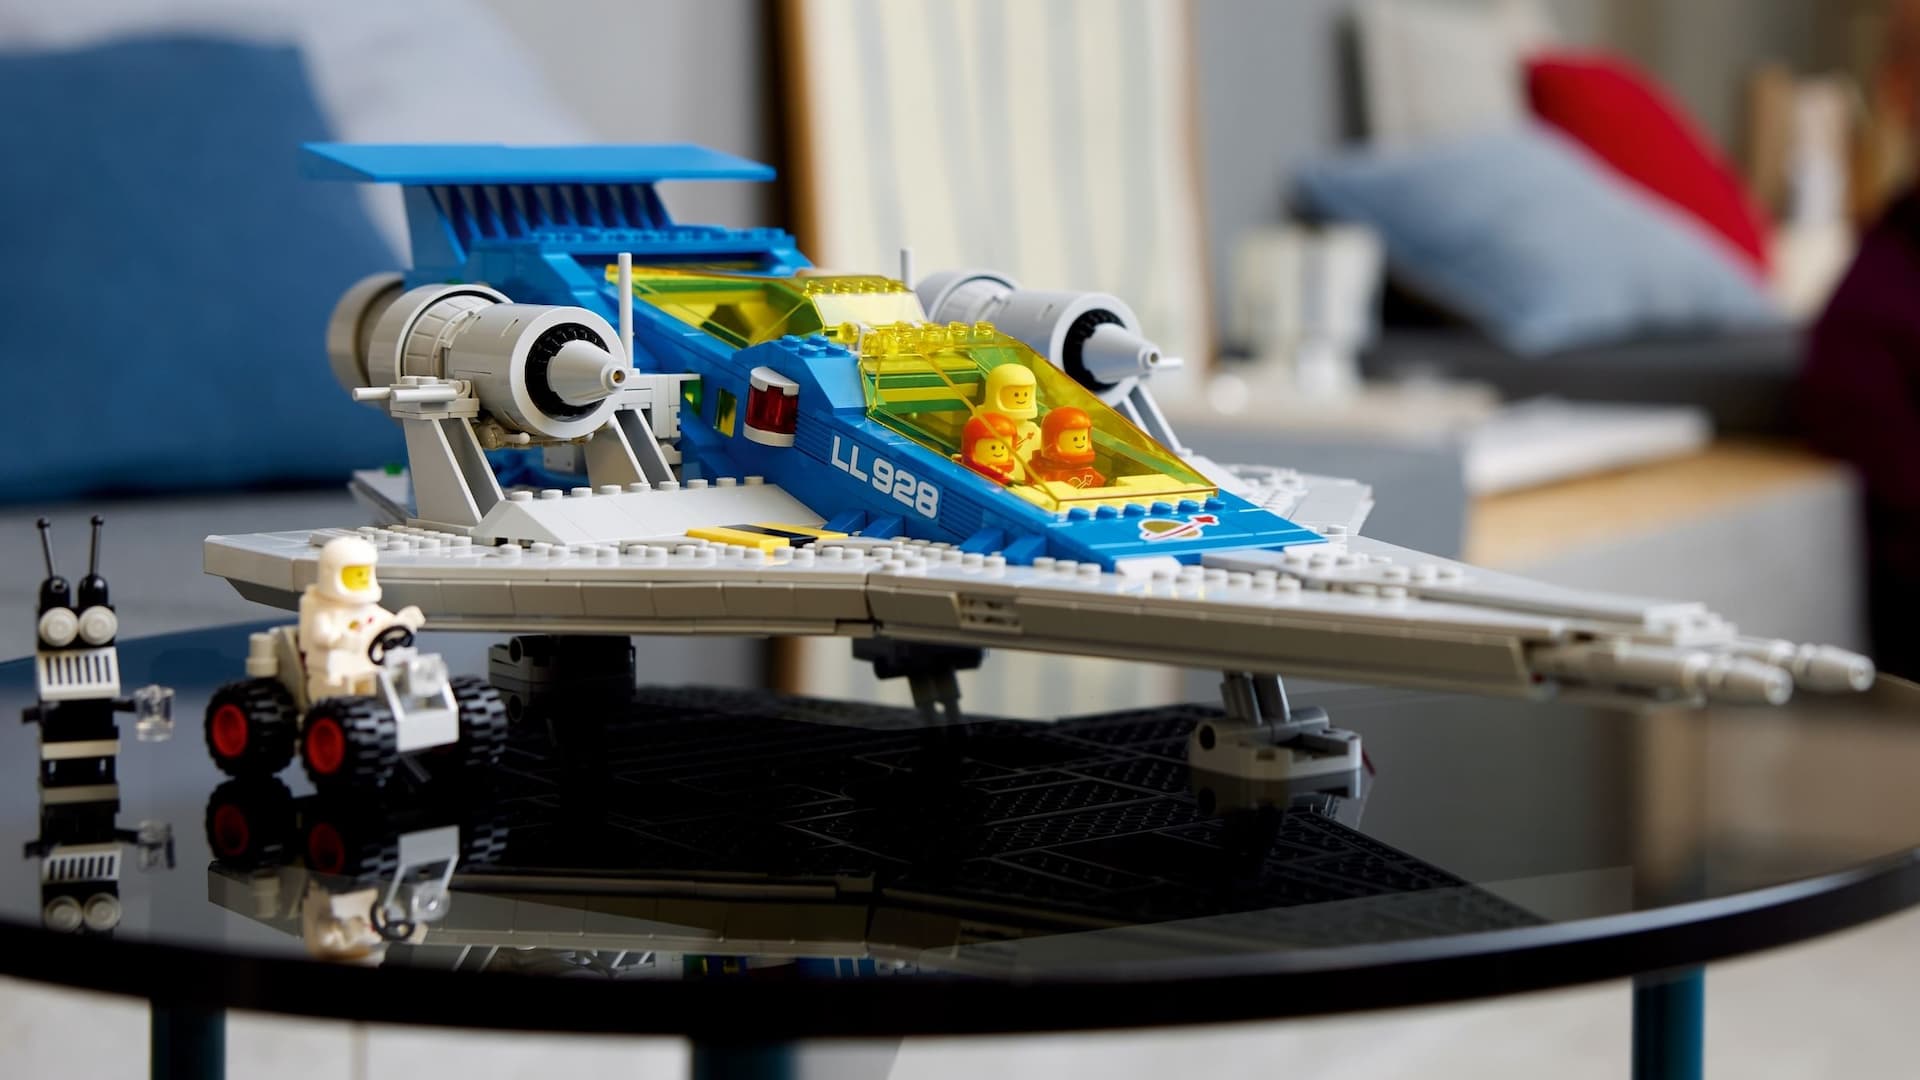 Derrotado Aprendiz ajustar Lego deals: save on Star Wars, space, Marvel & DC Lego sets | Space